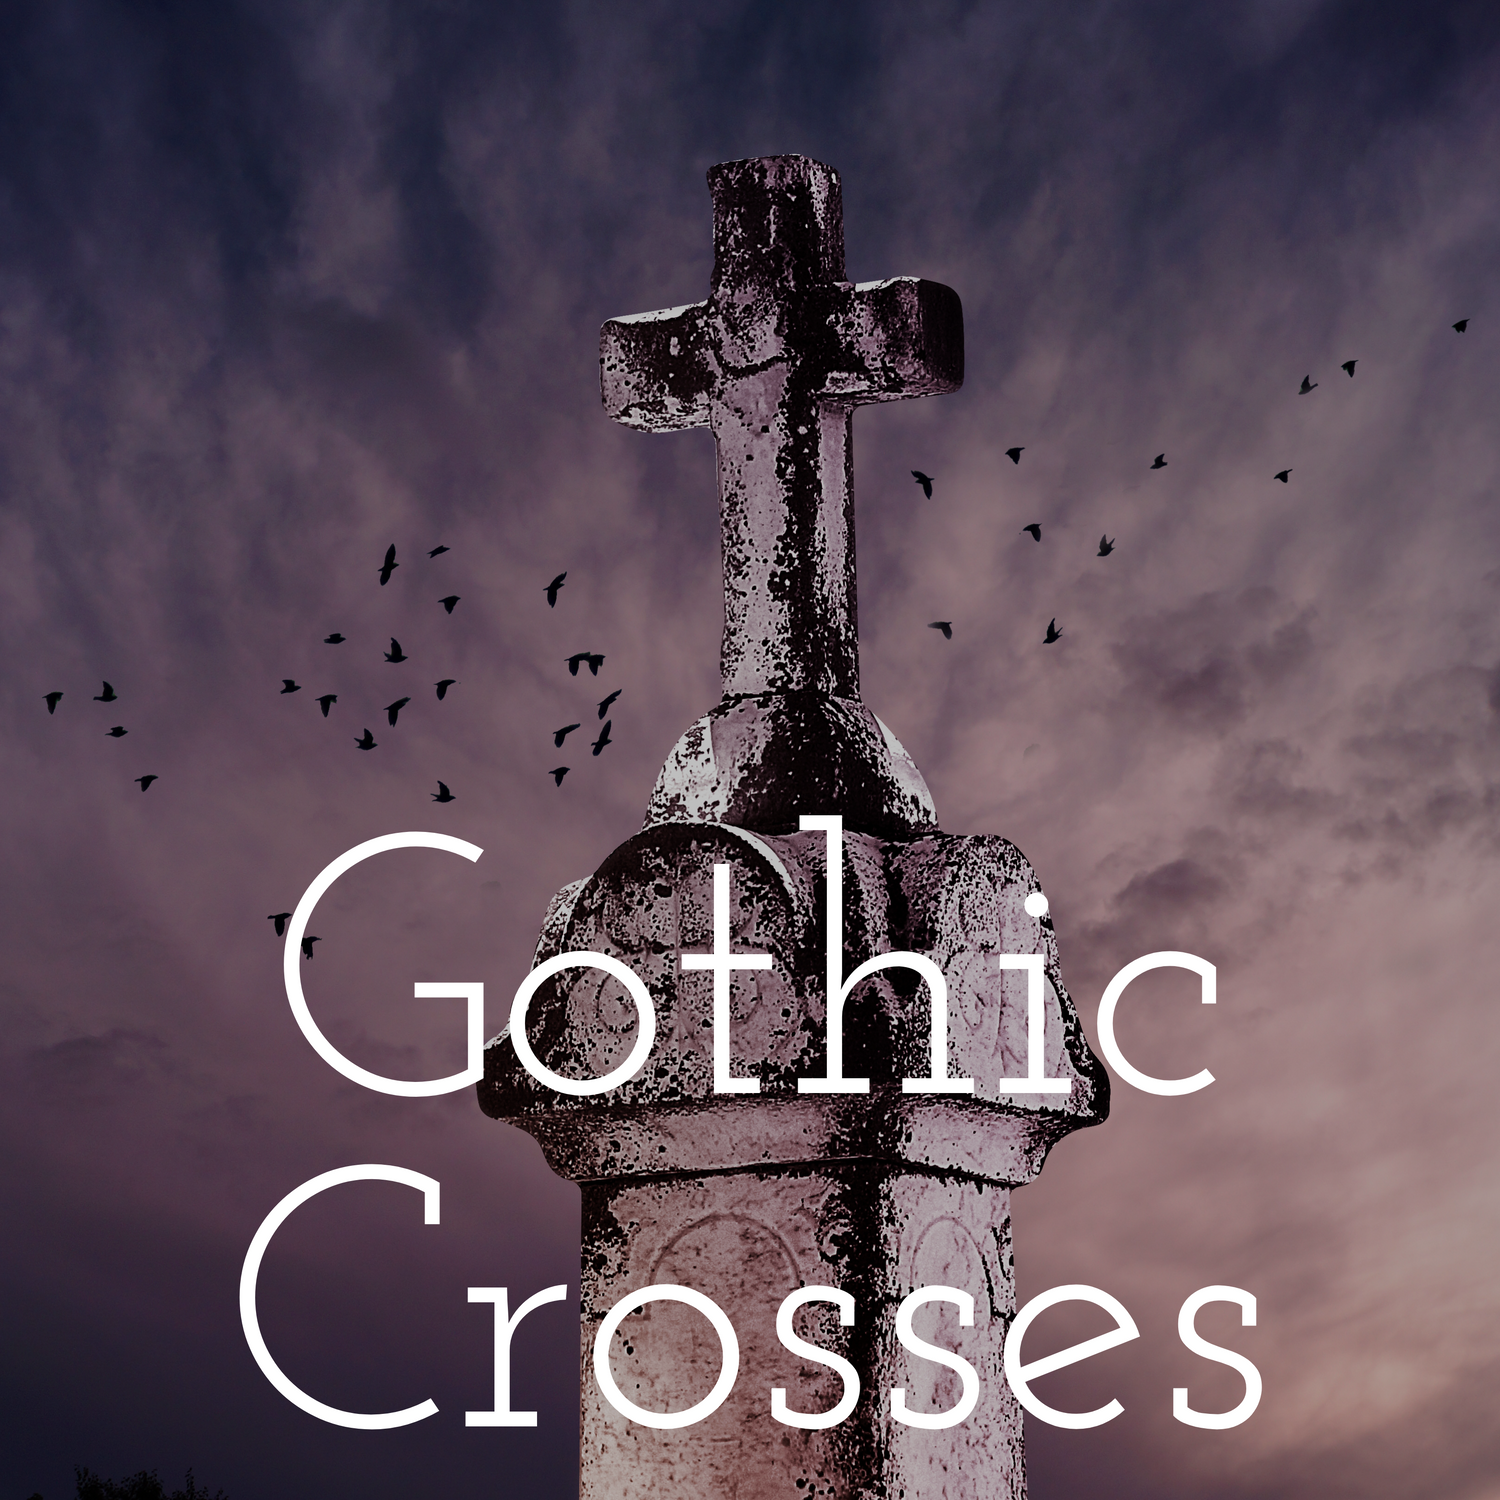 Gothic Crosses